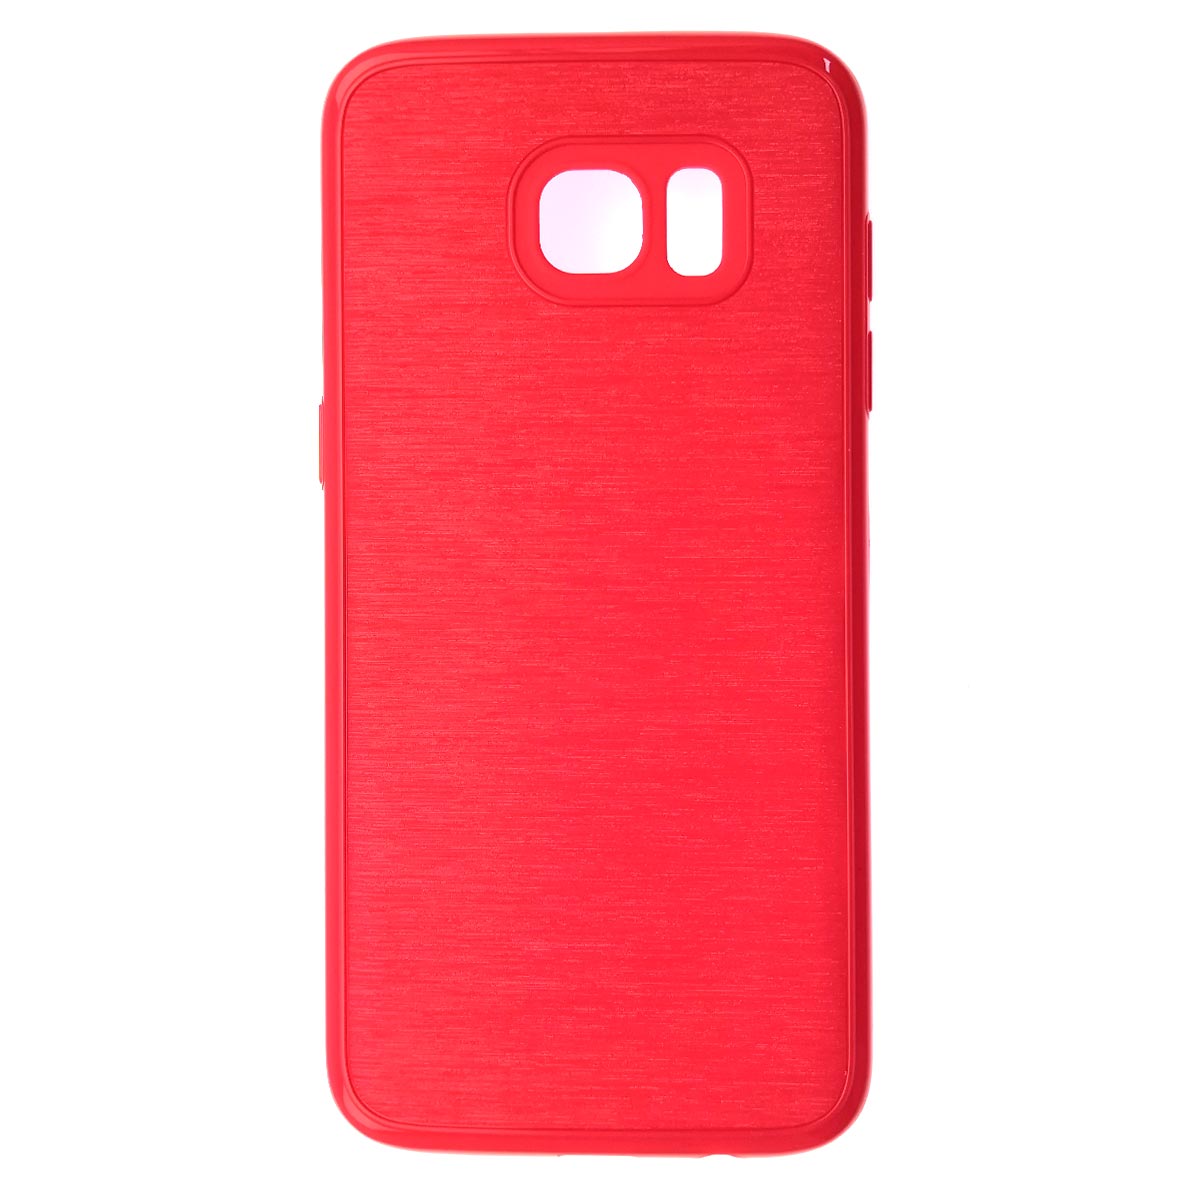 Чехол накладка для SAMSUNG Galaxy S7 Edge (SM-G935), силикон, текстура, цвет красный